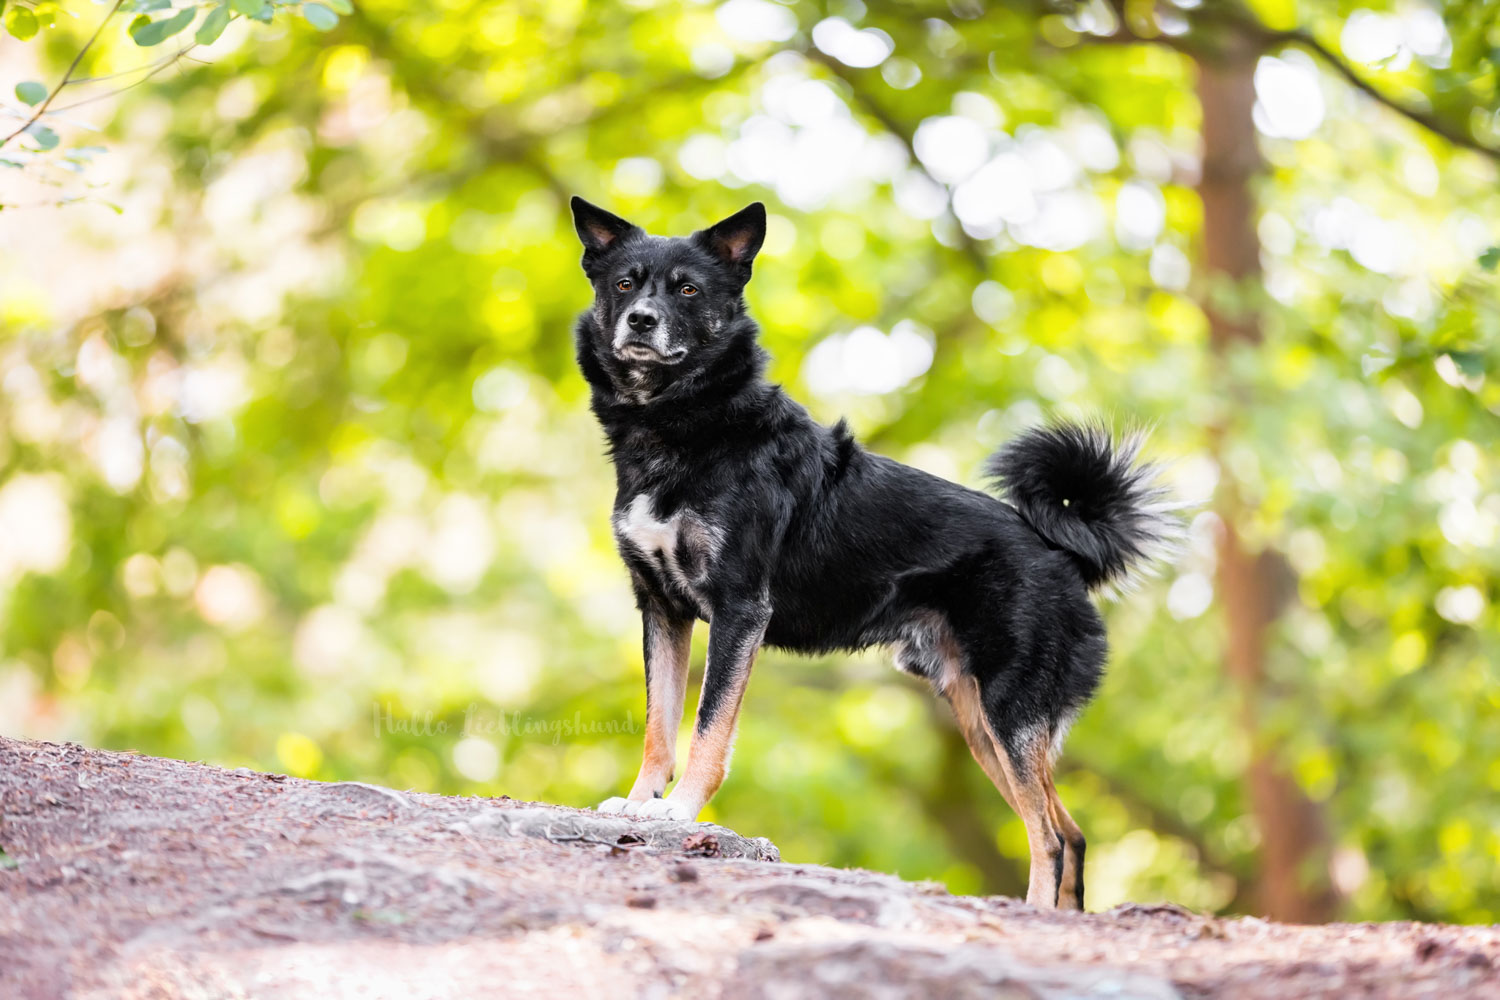 Fotos-machen-Weiterbildung-Fotocoaching-Waldfotos-schwarzer-Hund-fotografieren-Diana-Jill-Mehner-Oldenburg